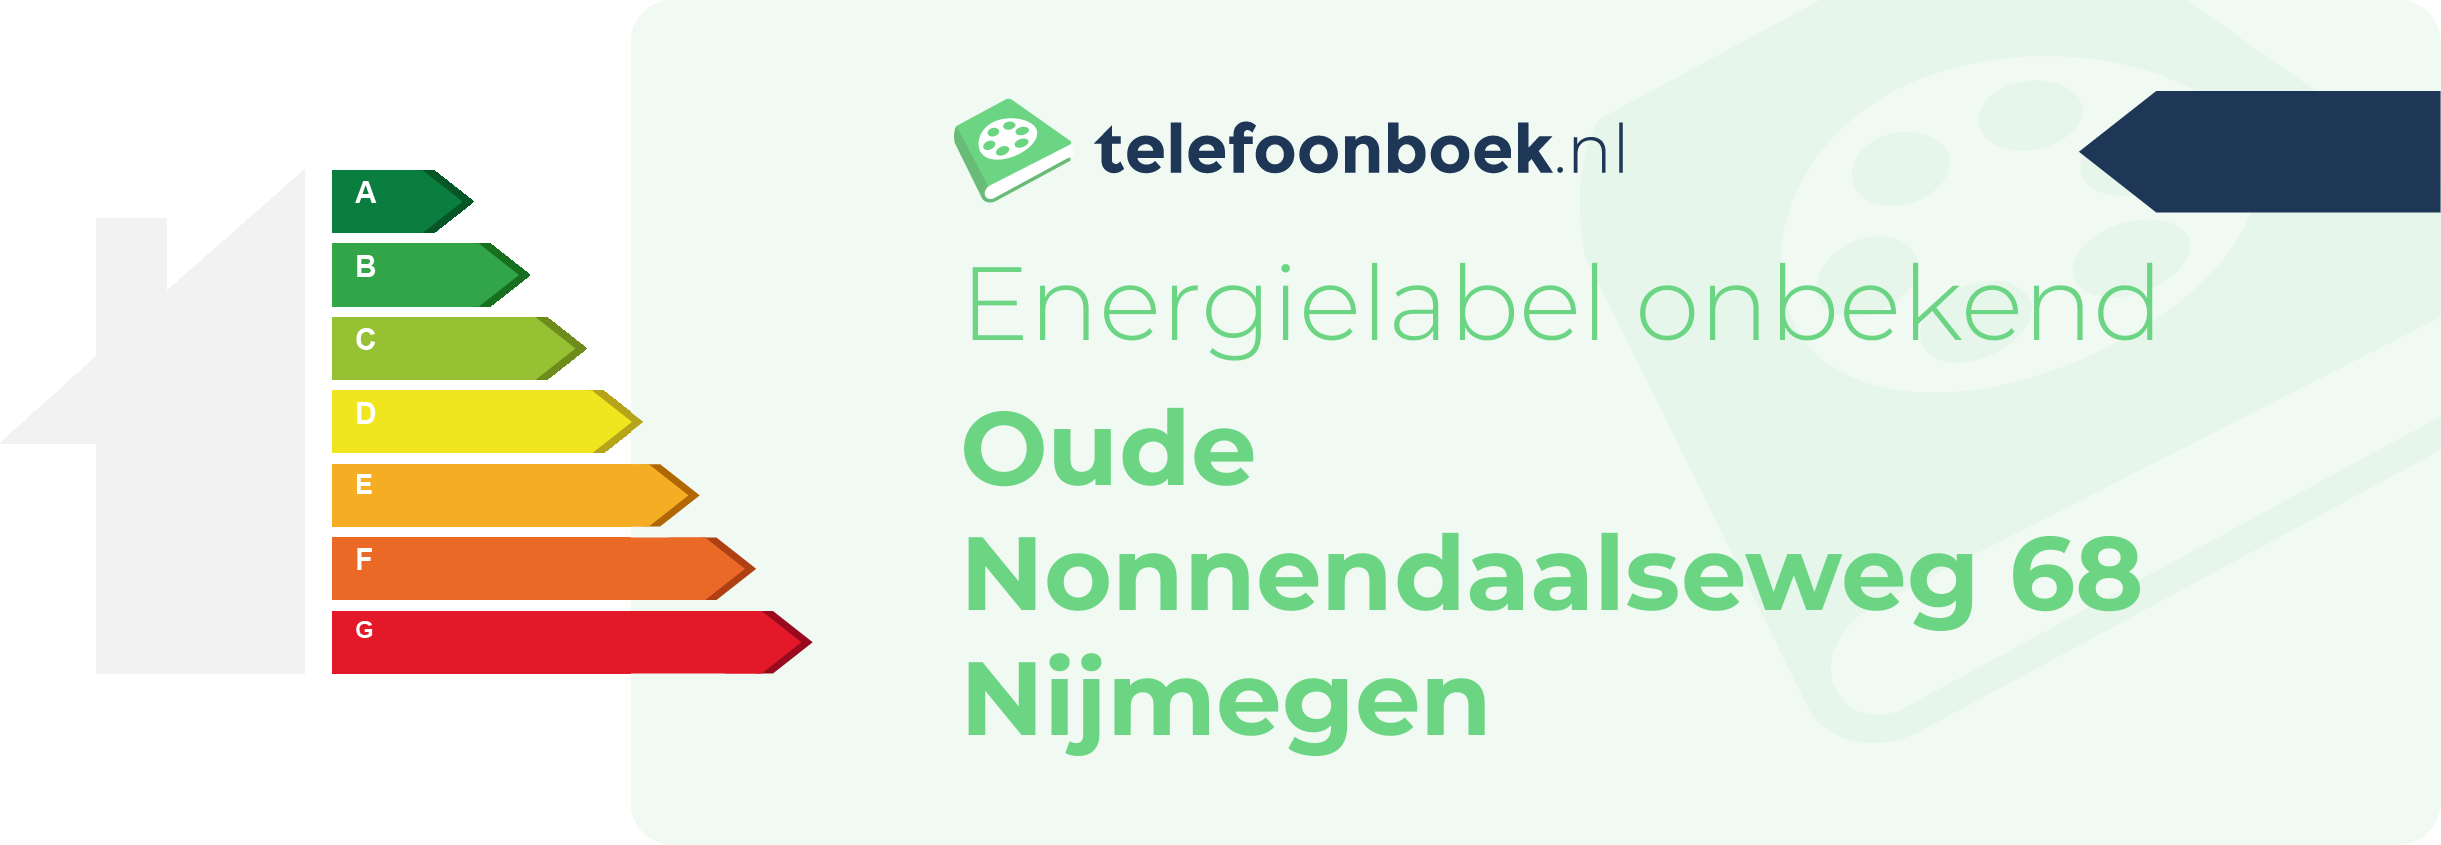 Energielabel Oude Nonnendaalseweg 68 Nijmegen